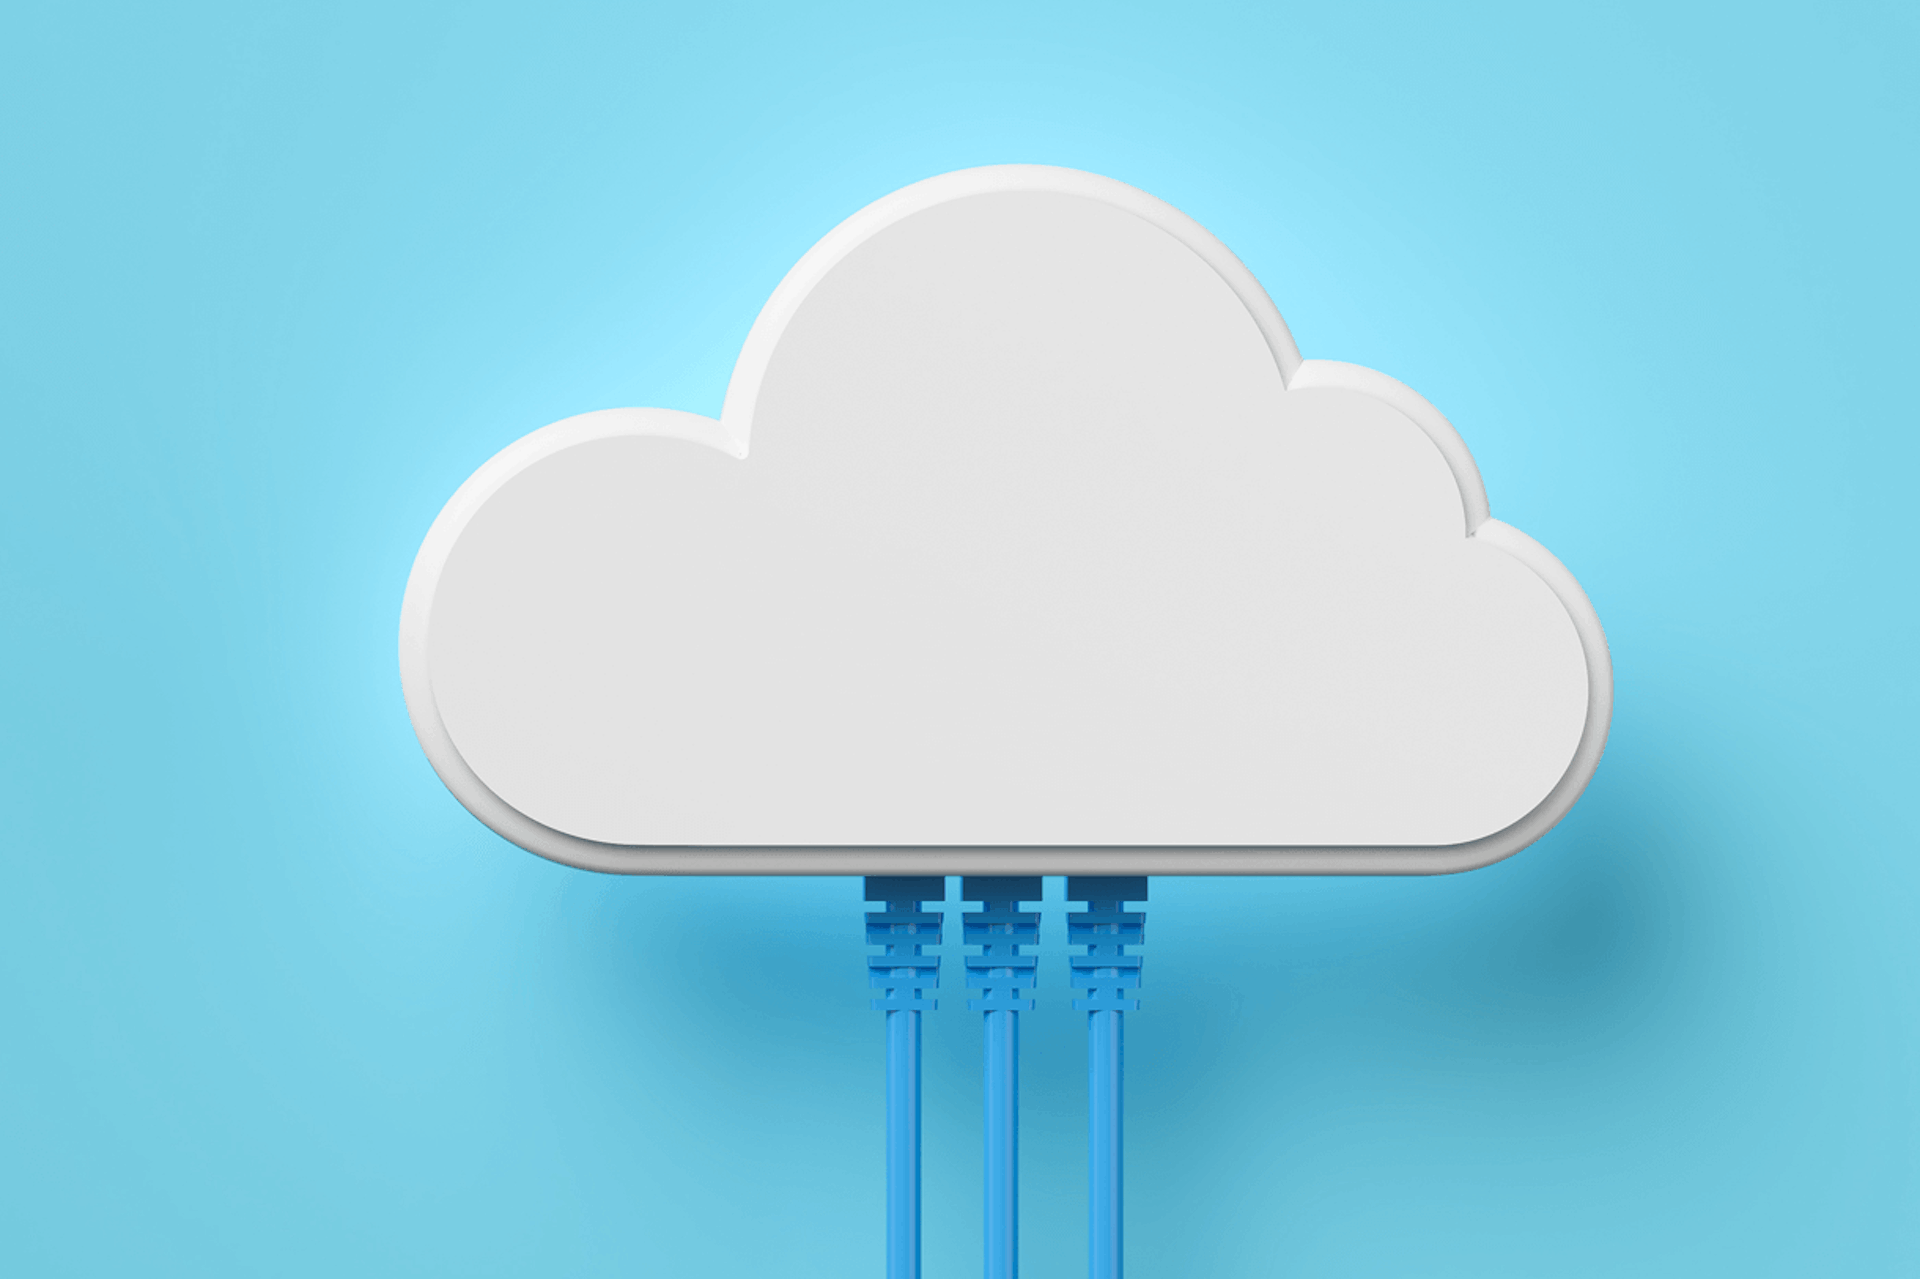 Kuvitus, jossa näkyy pilvi, jonka pohjasta lähtee kolme sinistä kaapelia vaaleansinisellä pohjalla. Kilpailijatietokanta-blogikirjoitus.